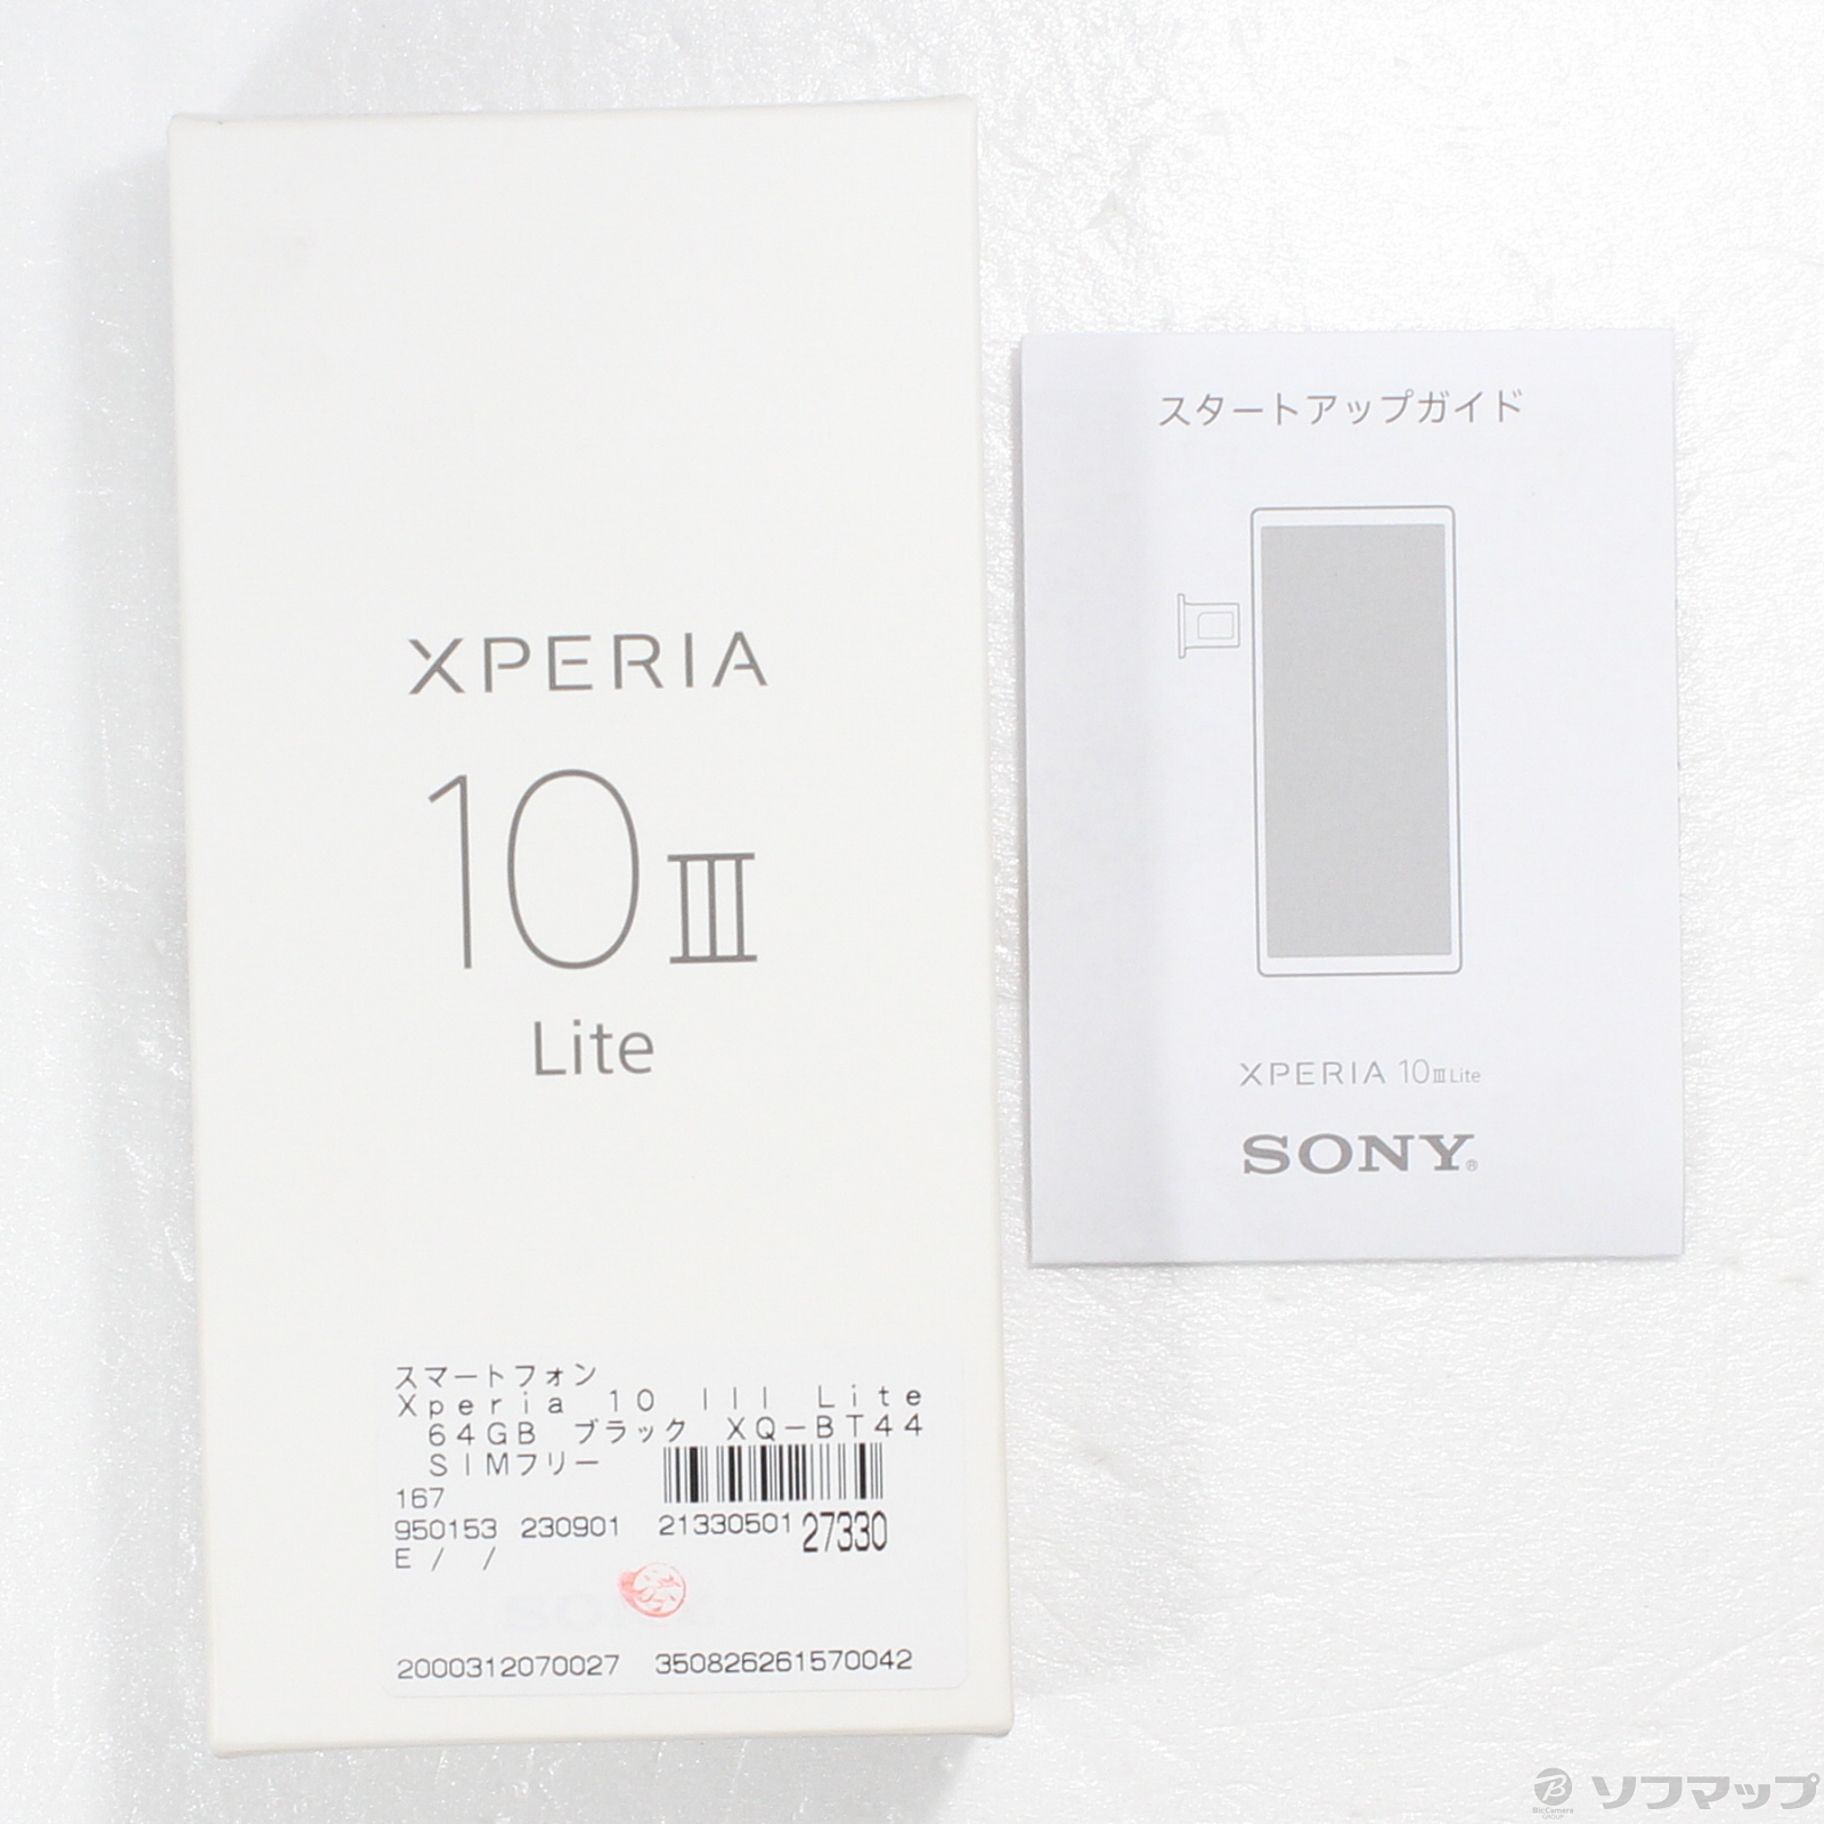 Xperia 10 III Lite XQ-BT44 64GB ブラック-